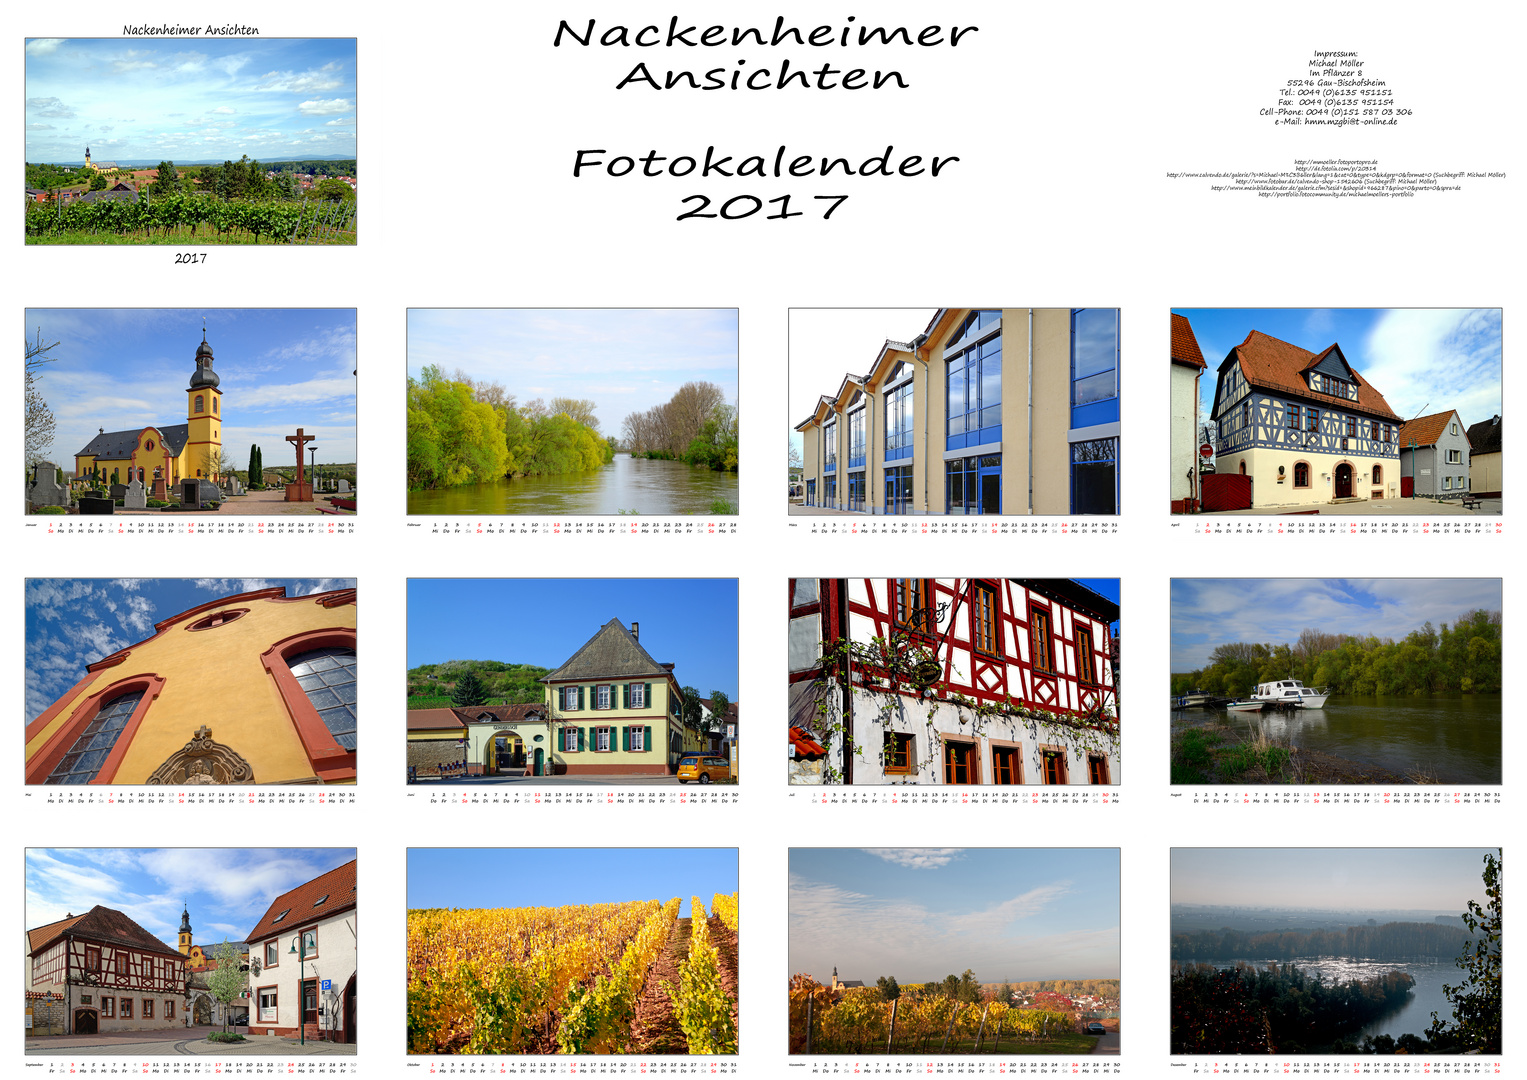 Nackenheim